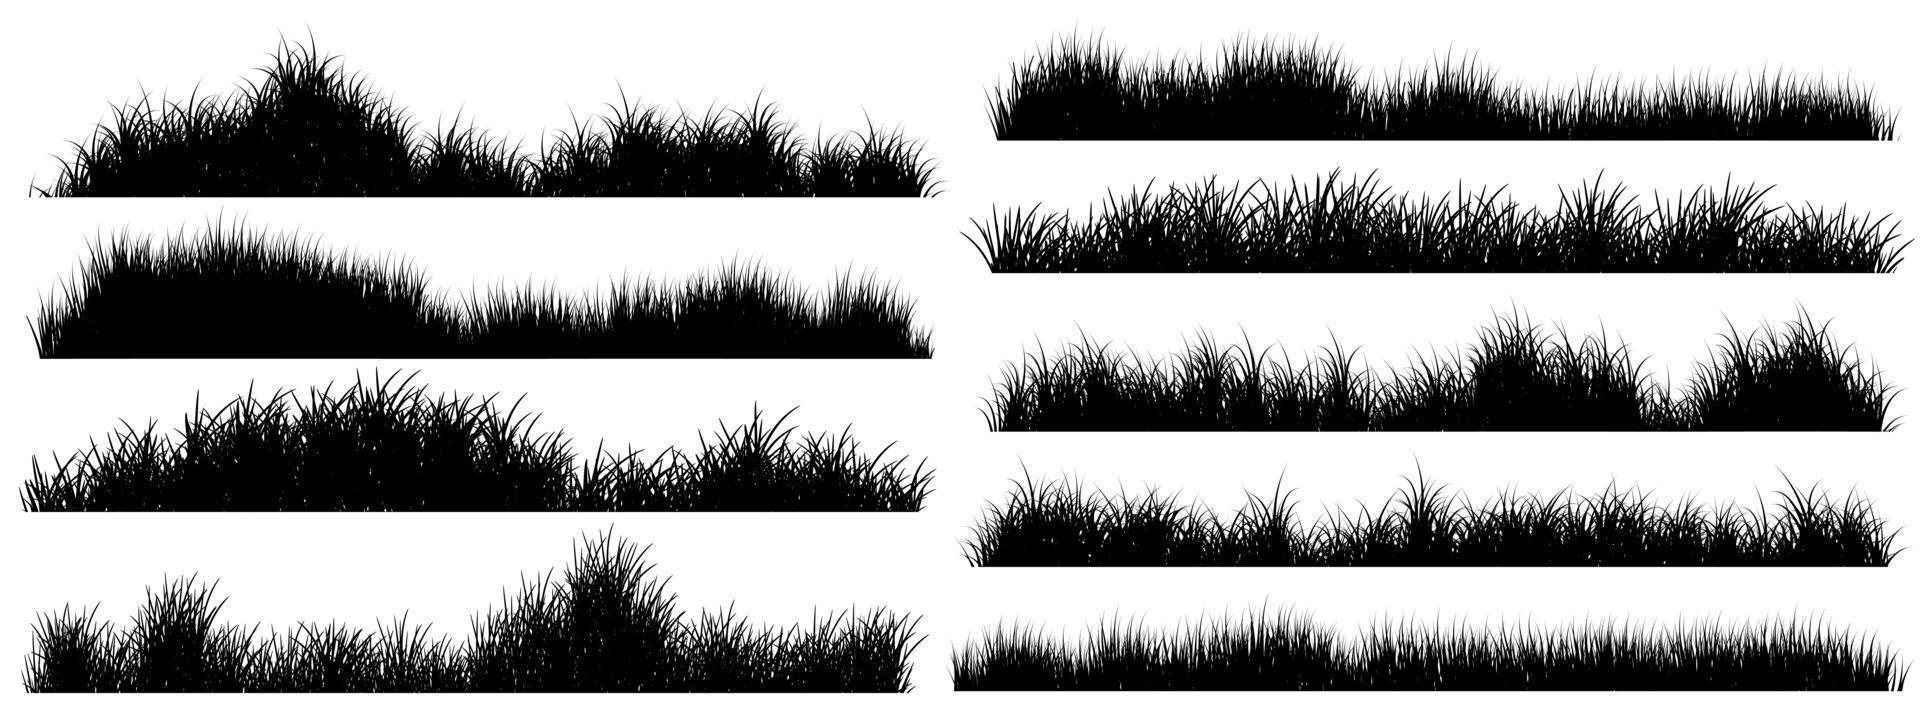 grass bundle, grass silhouette set, meadow vector